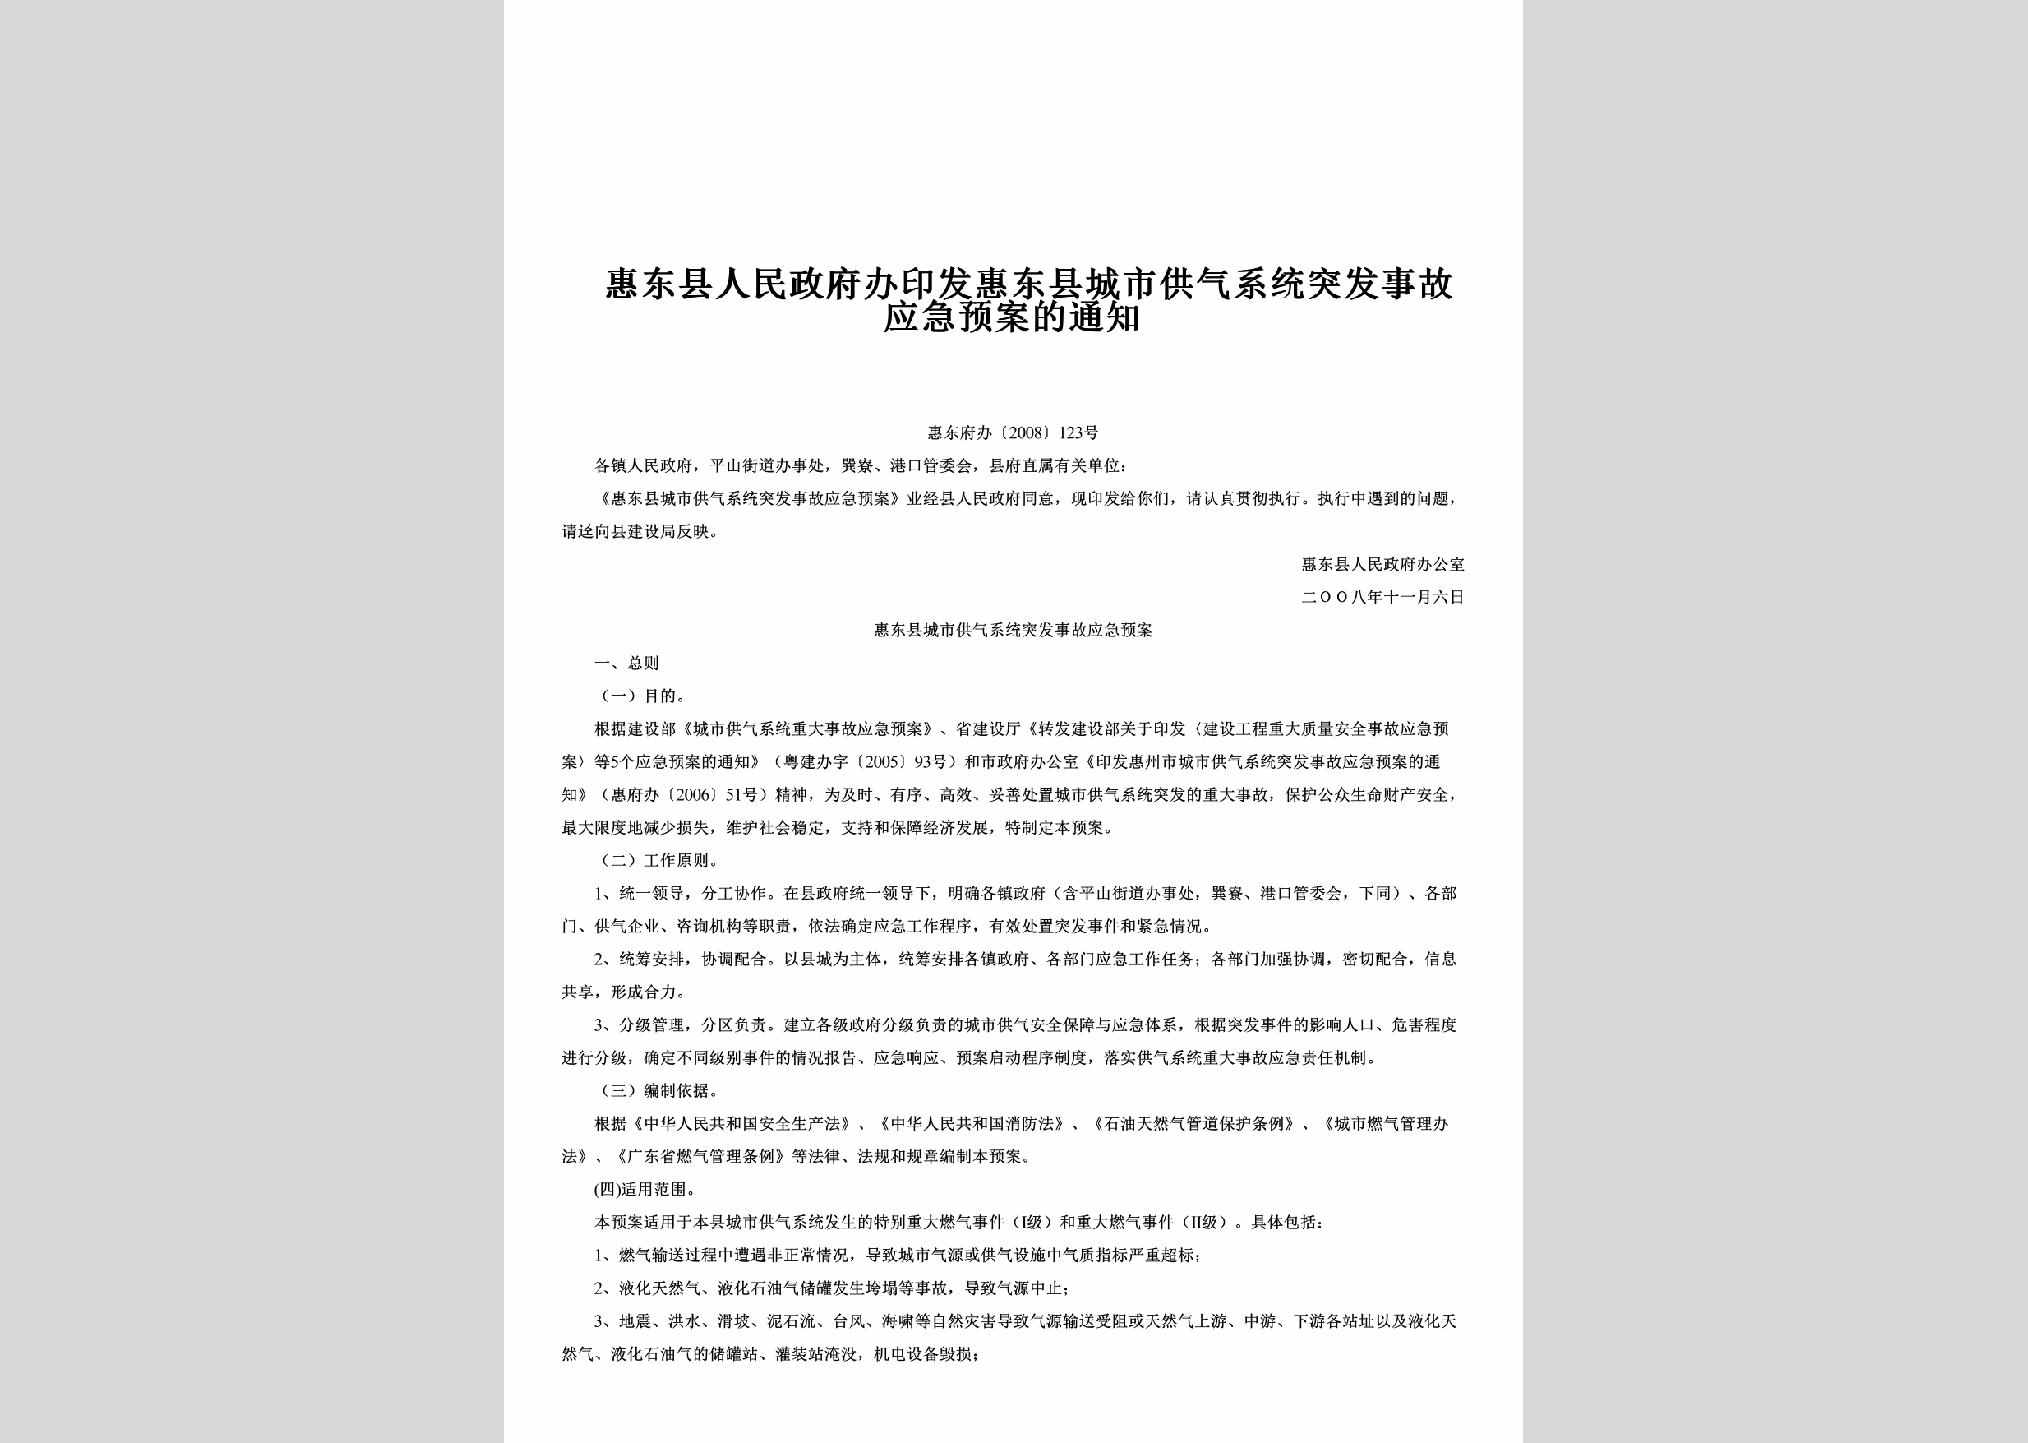 惠东府办[2008]123号：印发惠东县城市供气系统突发事故应急预案的通知